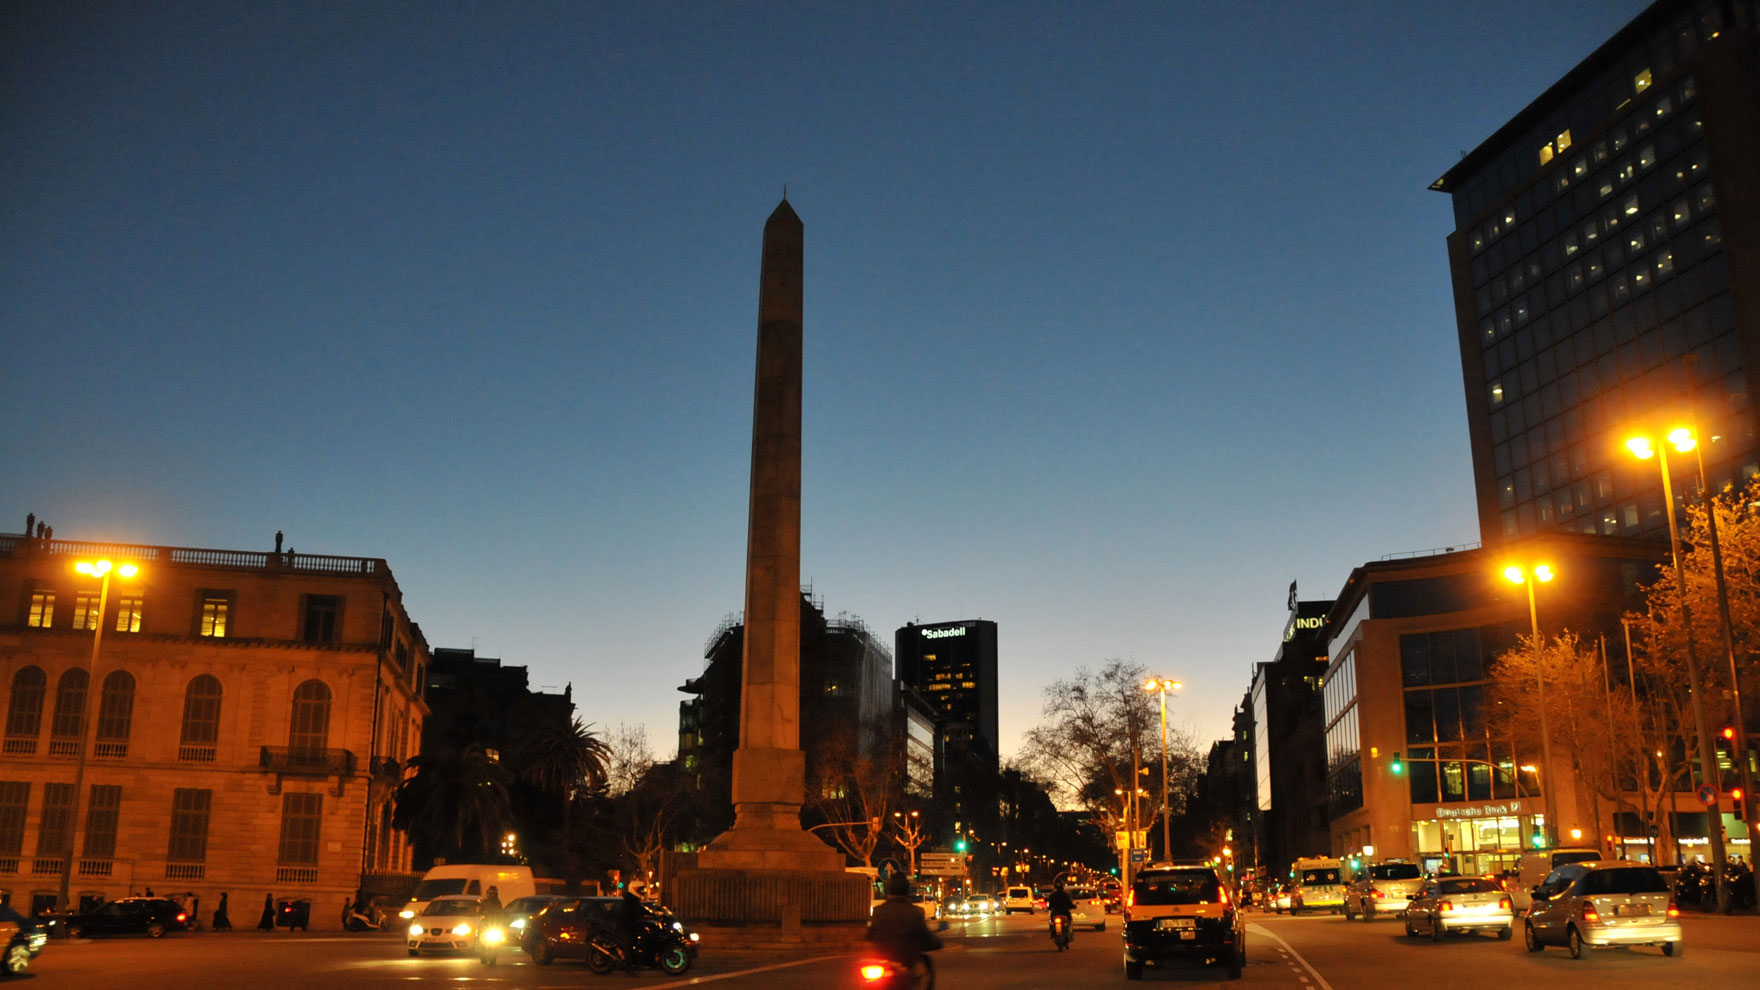 Obelisc de Barcelona sense il·luminació